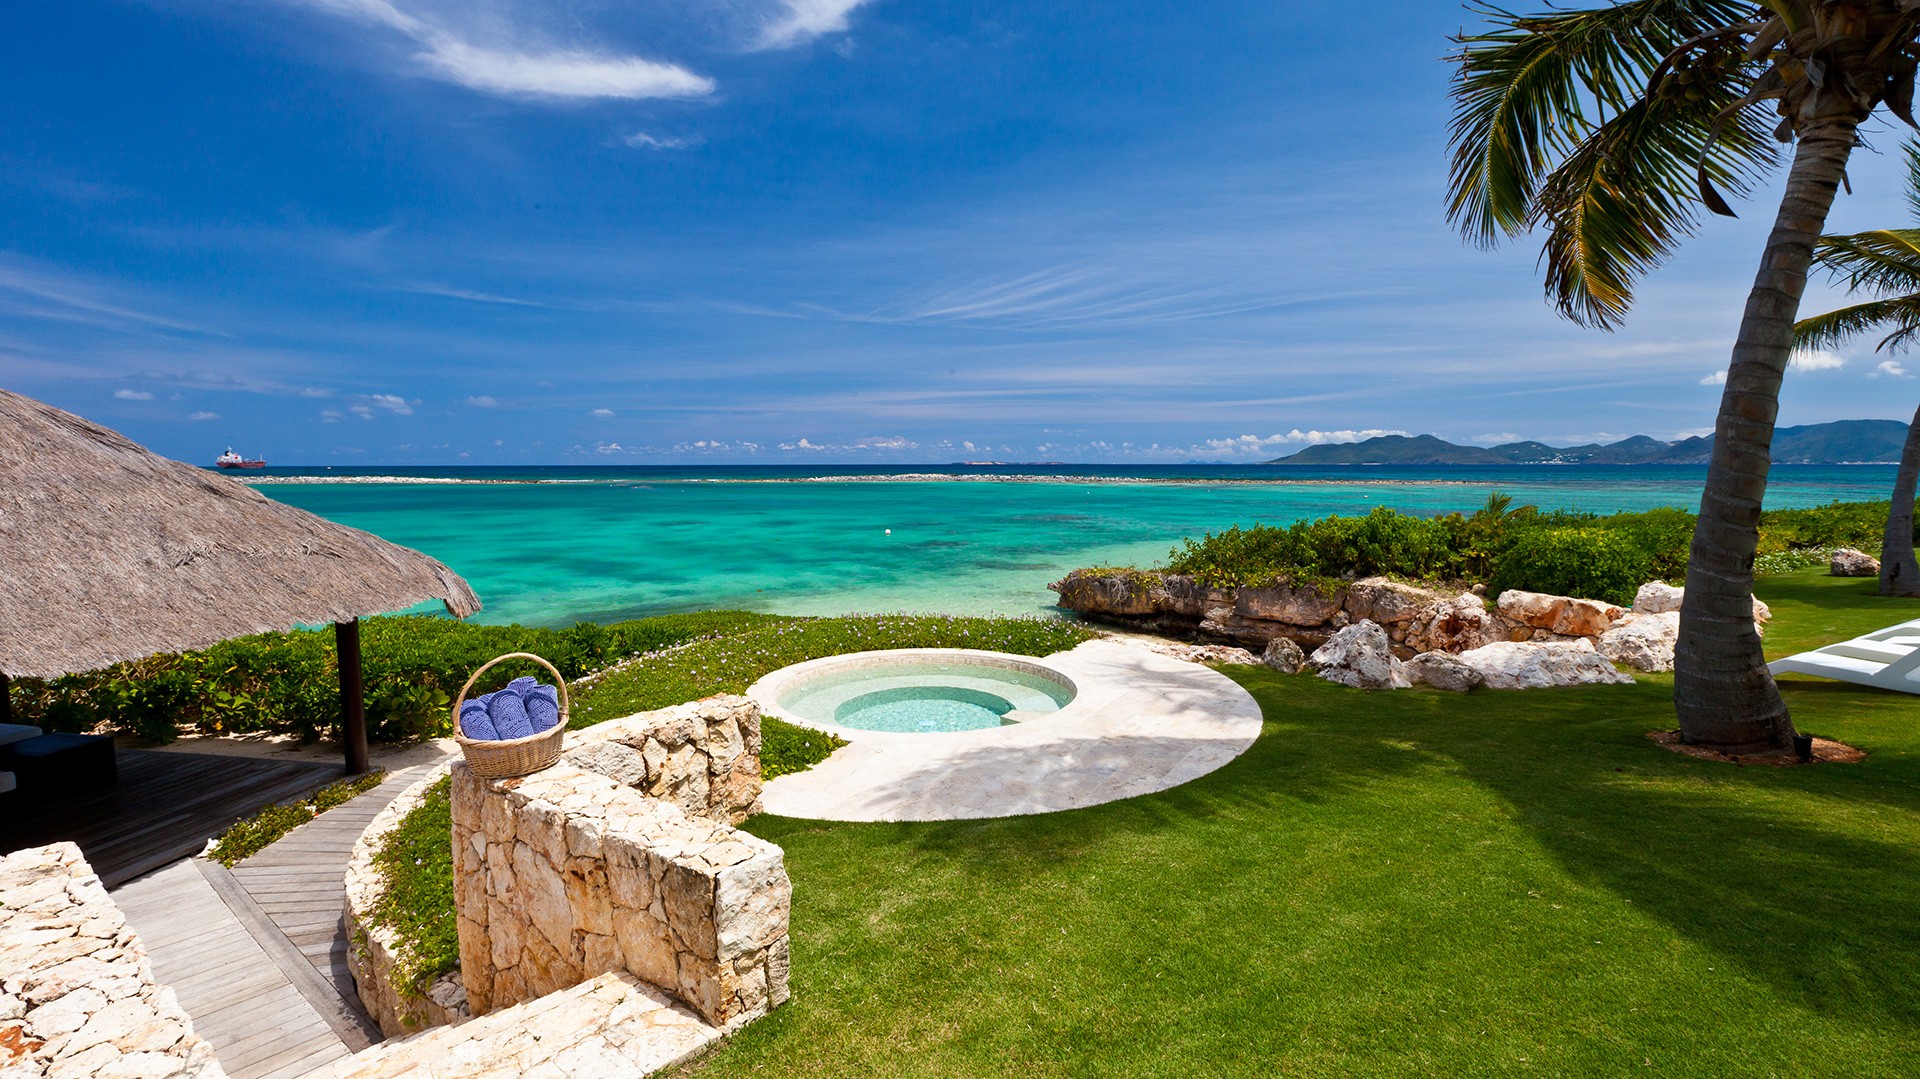 LeBleu-Villa-Anguilla-Rental-Caribbean-hot-tub